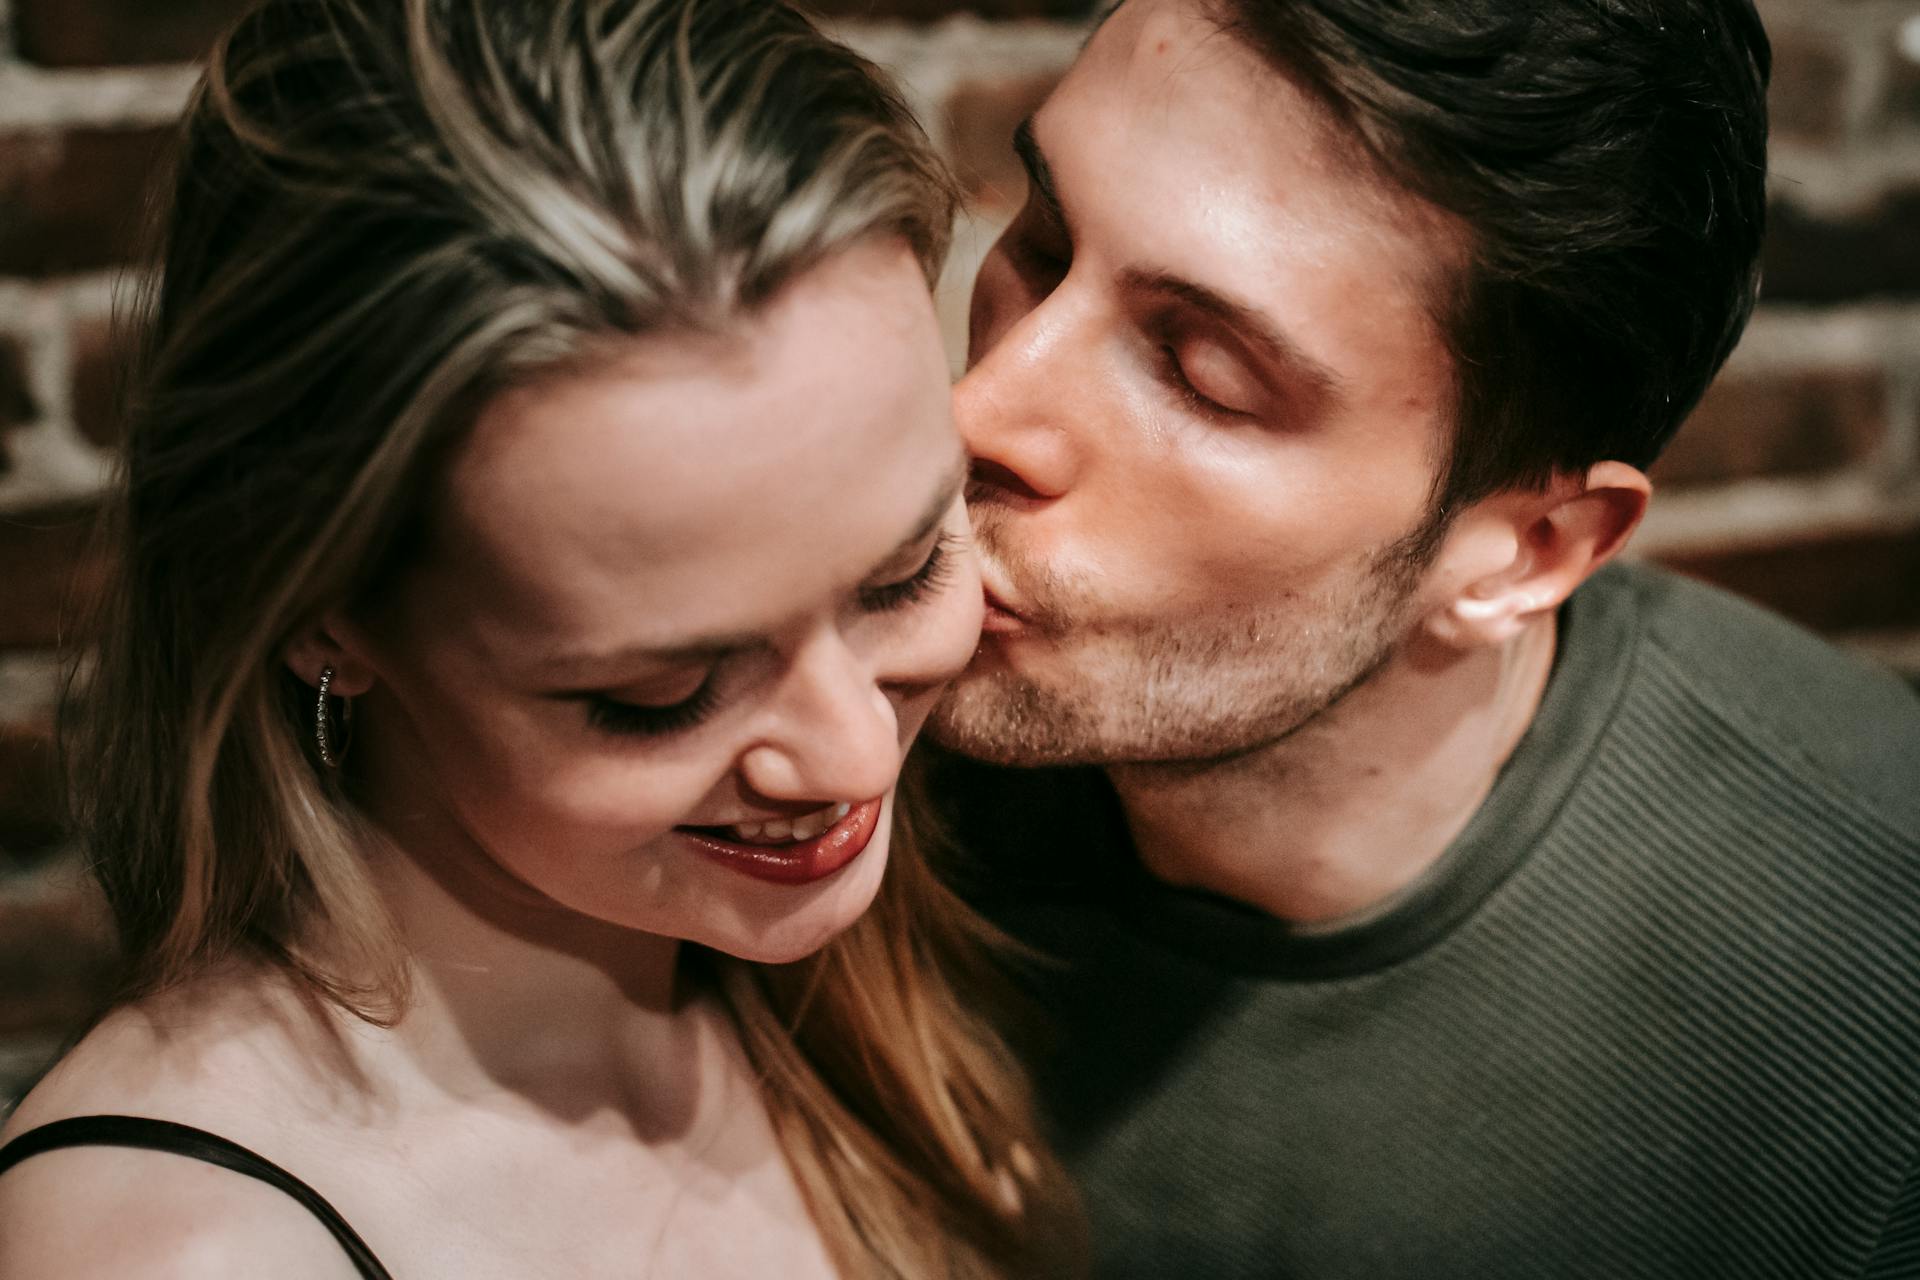 Un homme embrassant sa petite amie sur la joue | Source : Pexels